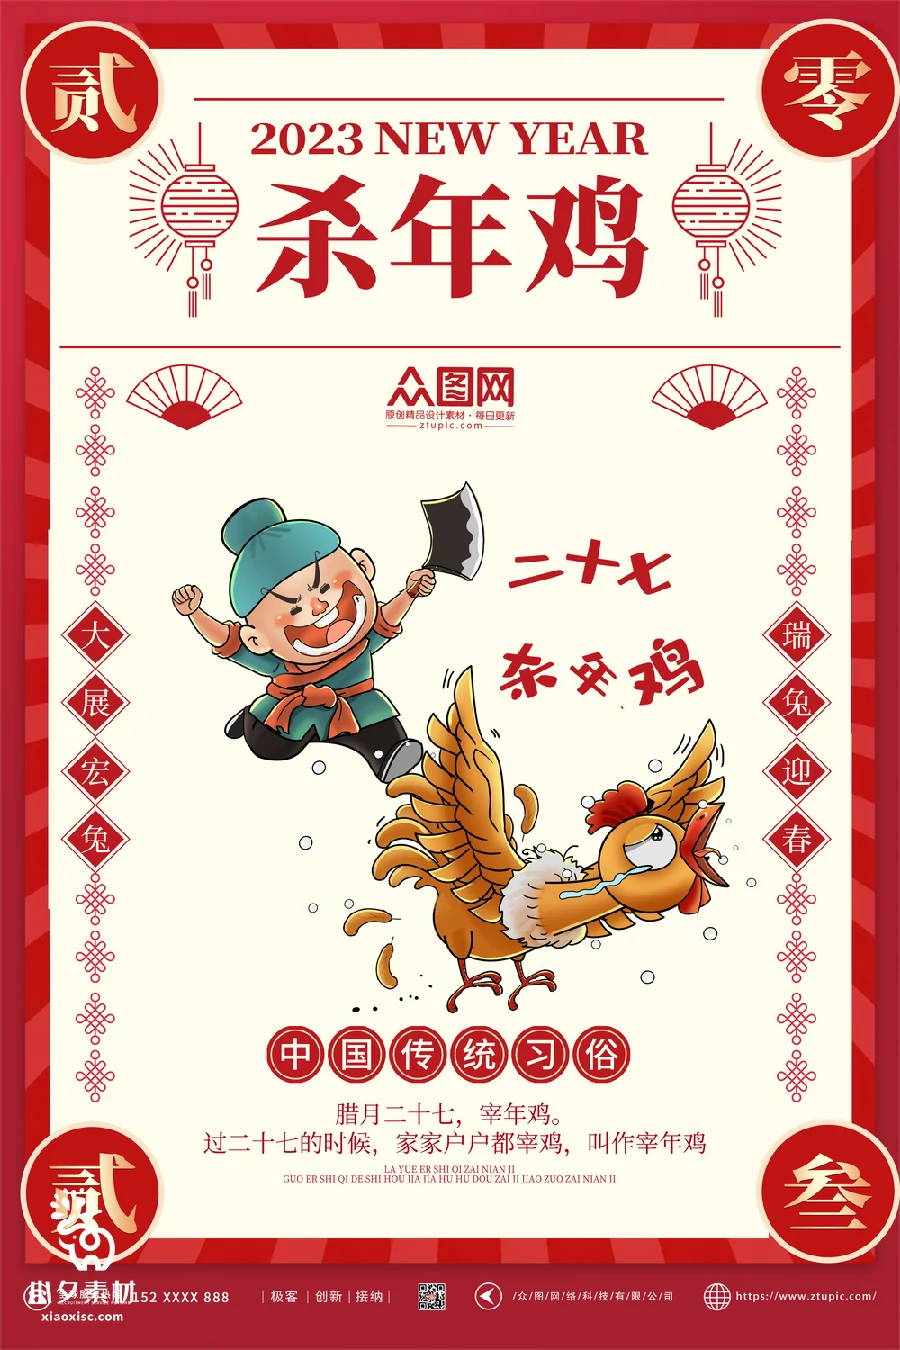 2023兔年新年传统节日年俗过年拜年习俗节气系列海报PSD设计素材【063】